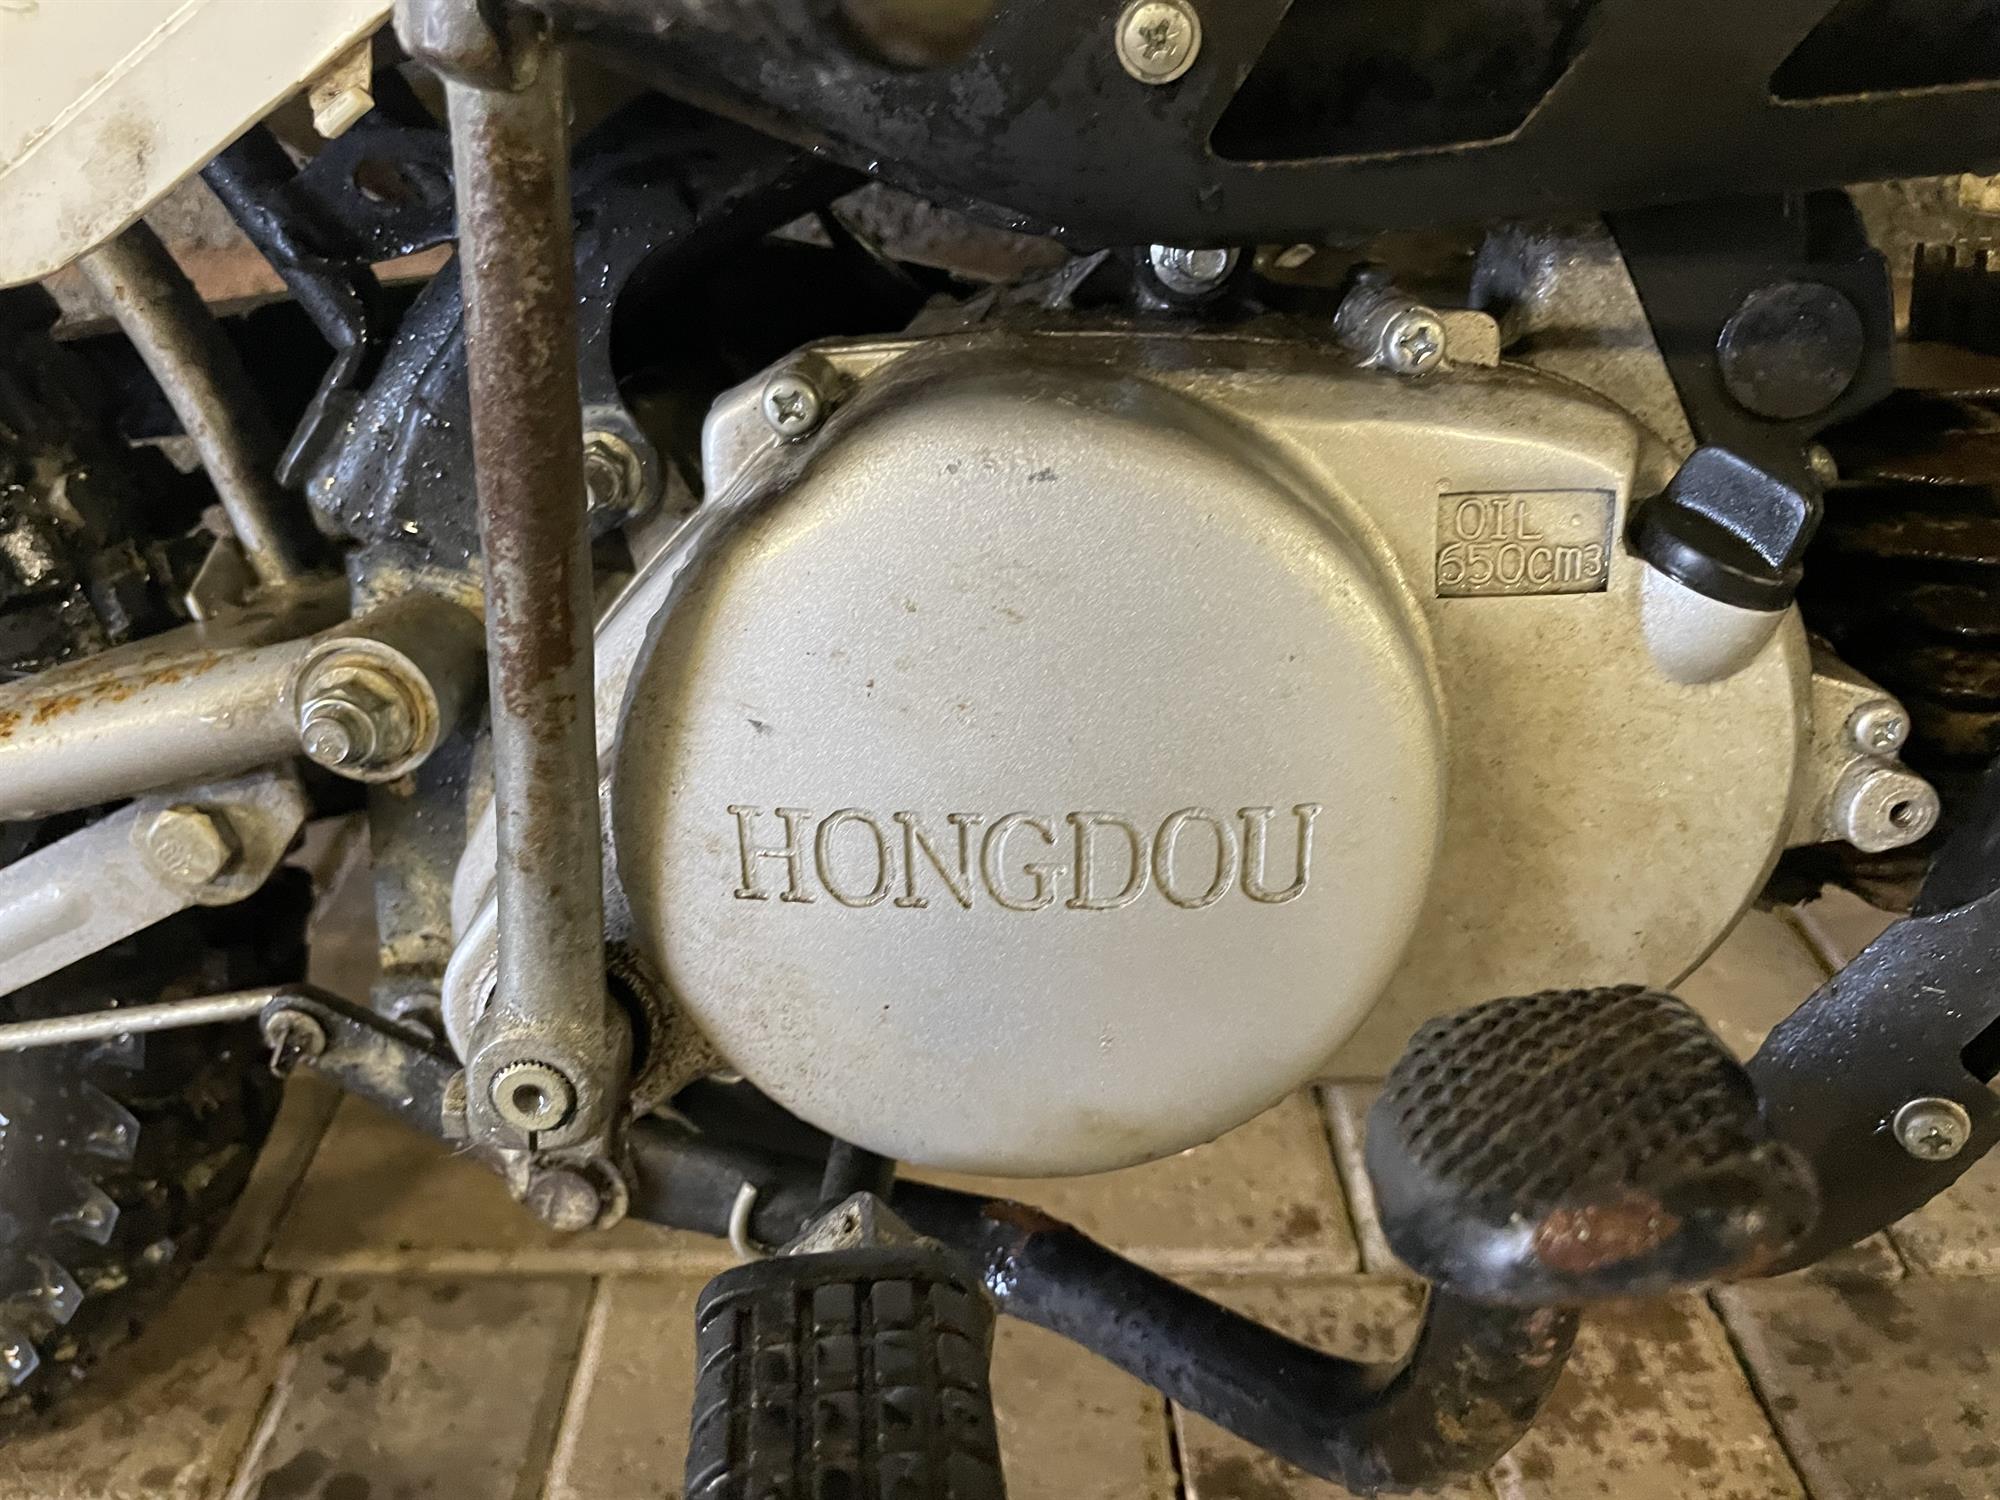 Hongdou Scrambler Mini Bike - Image 8 of 10